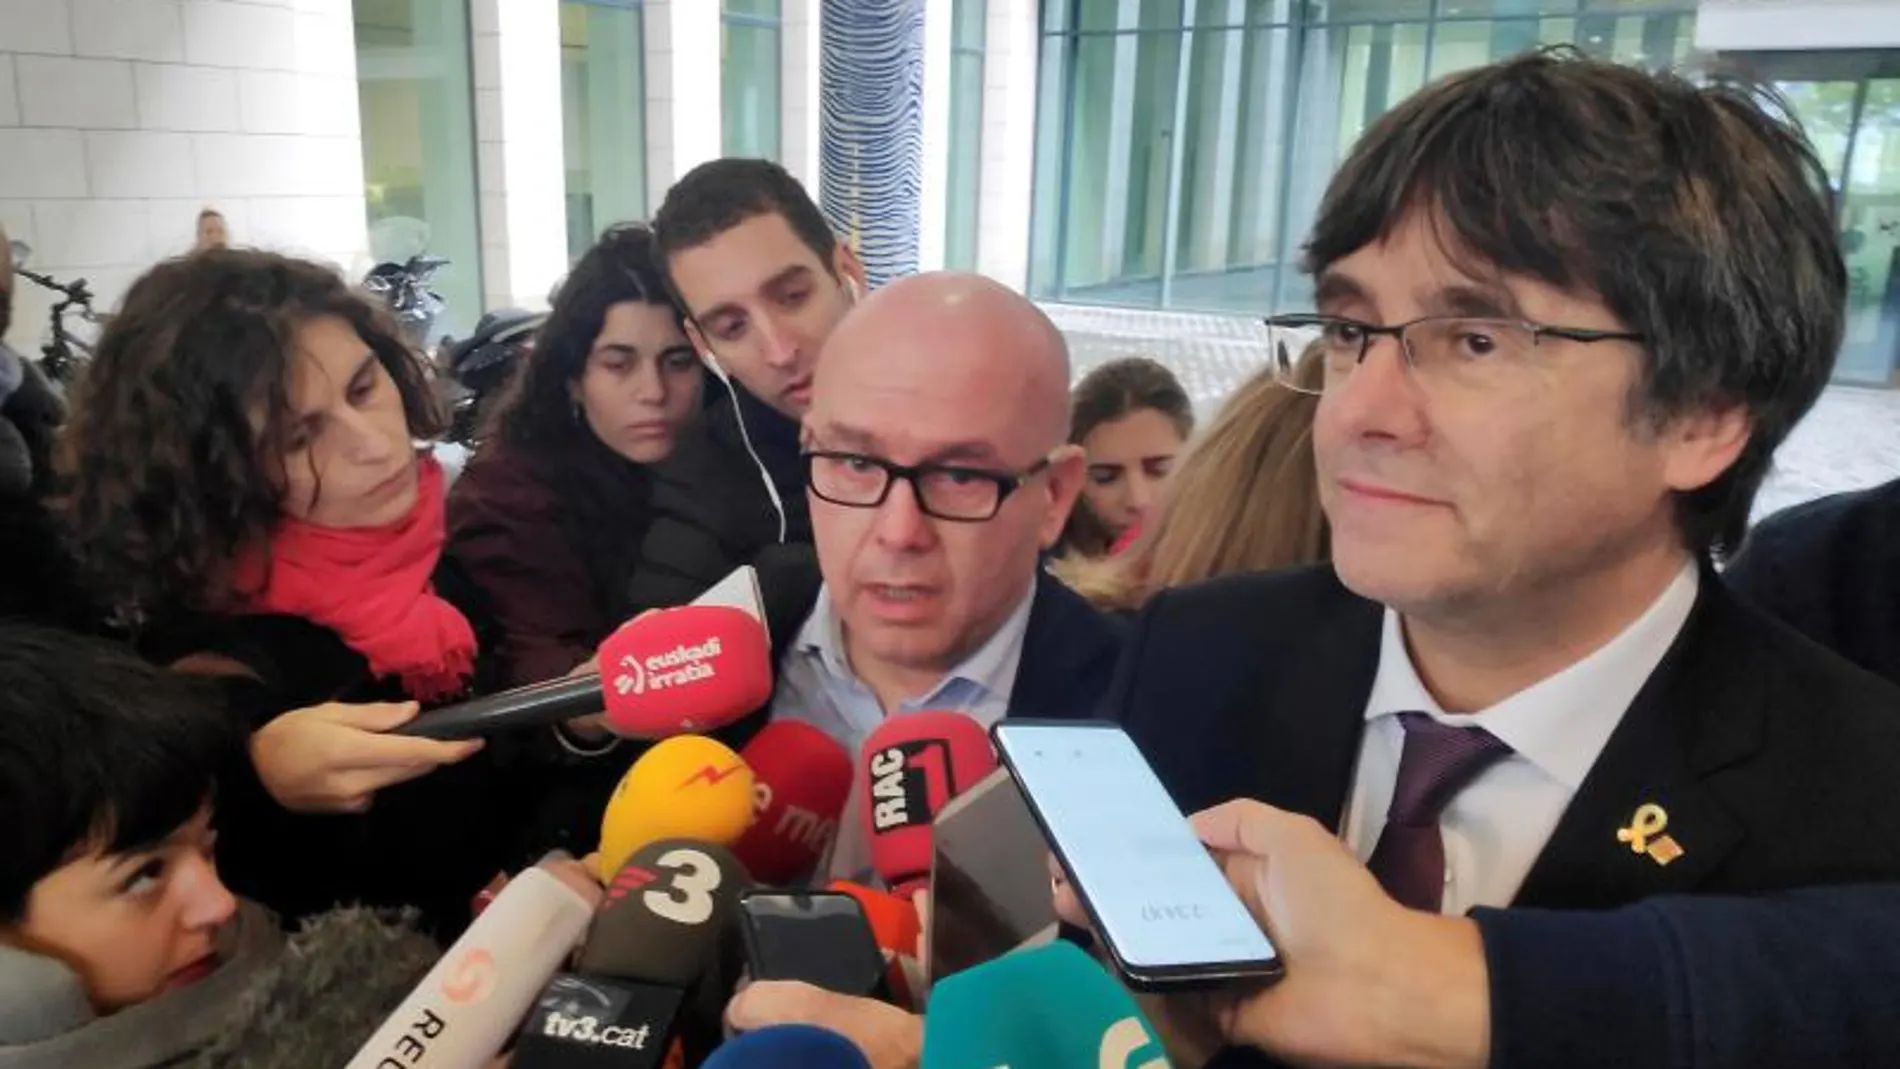 El abogado Gonzalo Boye con Carles Puigdemont